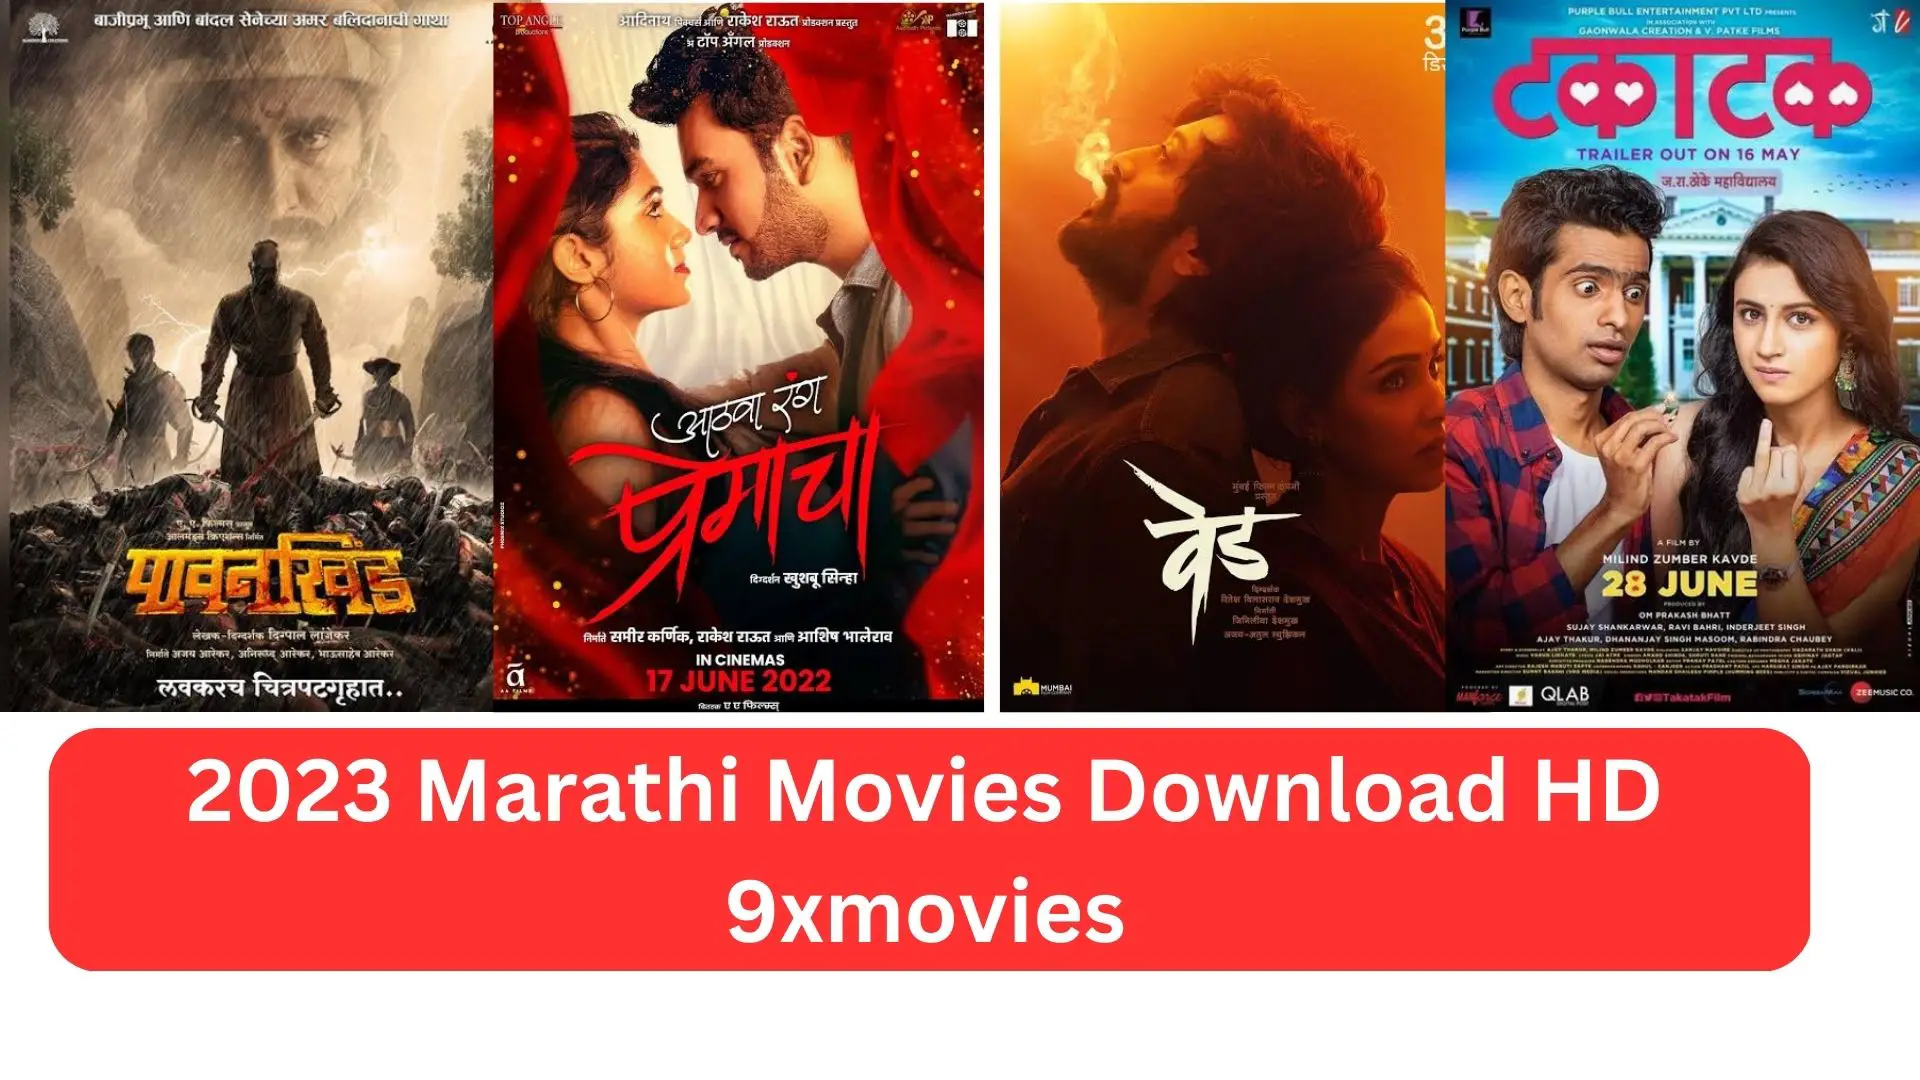 Marathi Movies Download 9xmovies full HD, OTT, Download marathi movies 9xmovies HD 2023